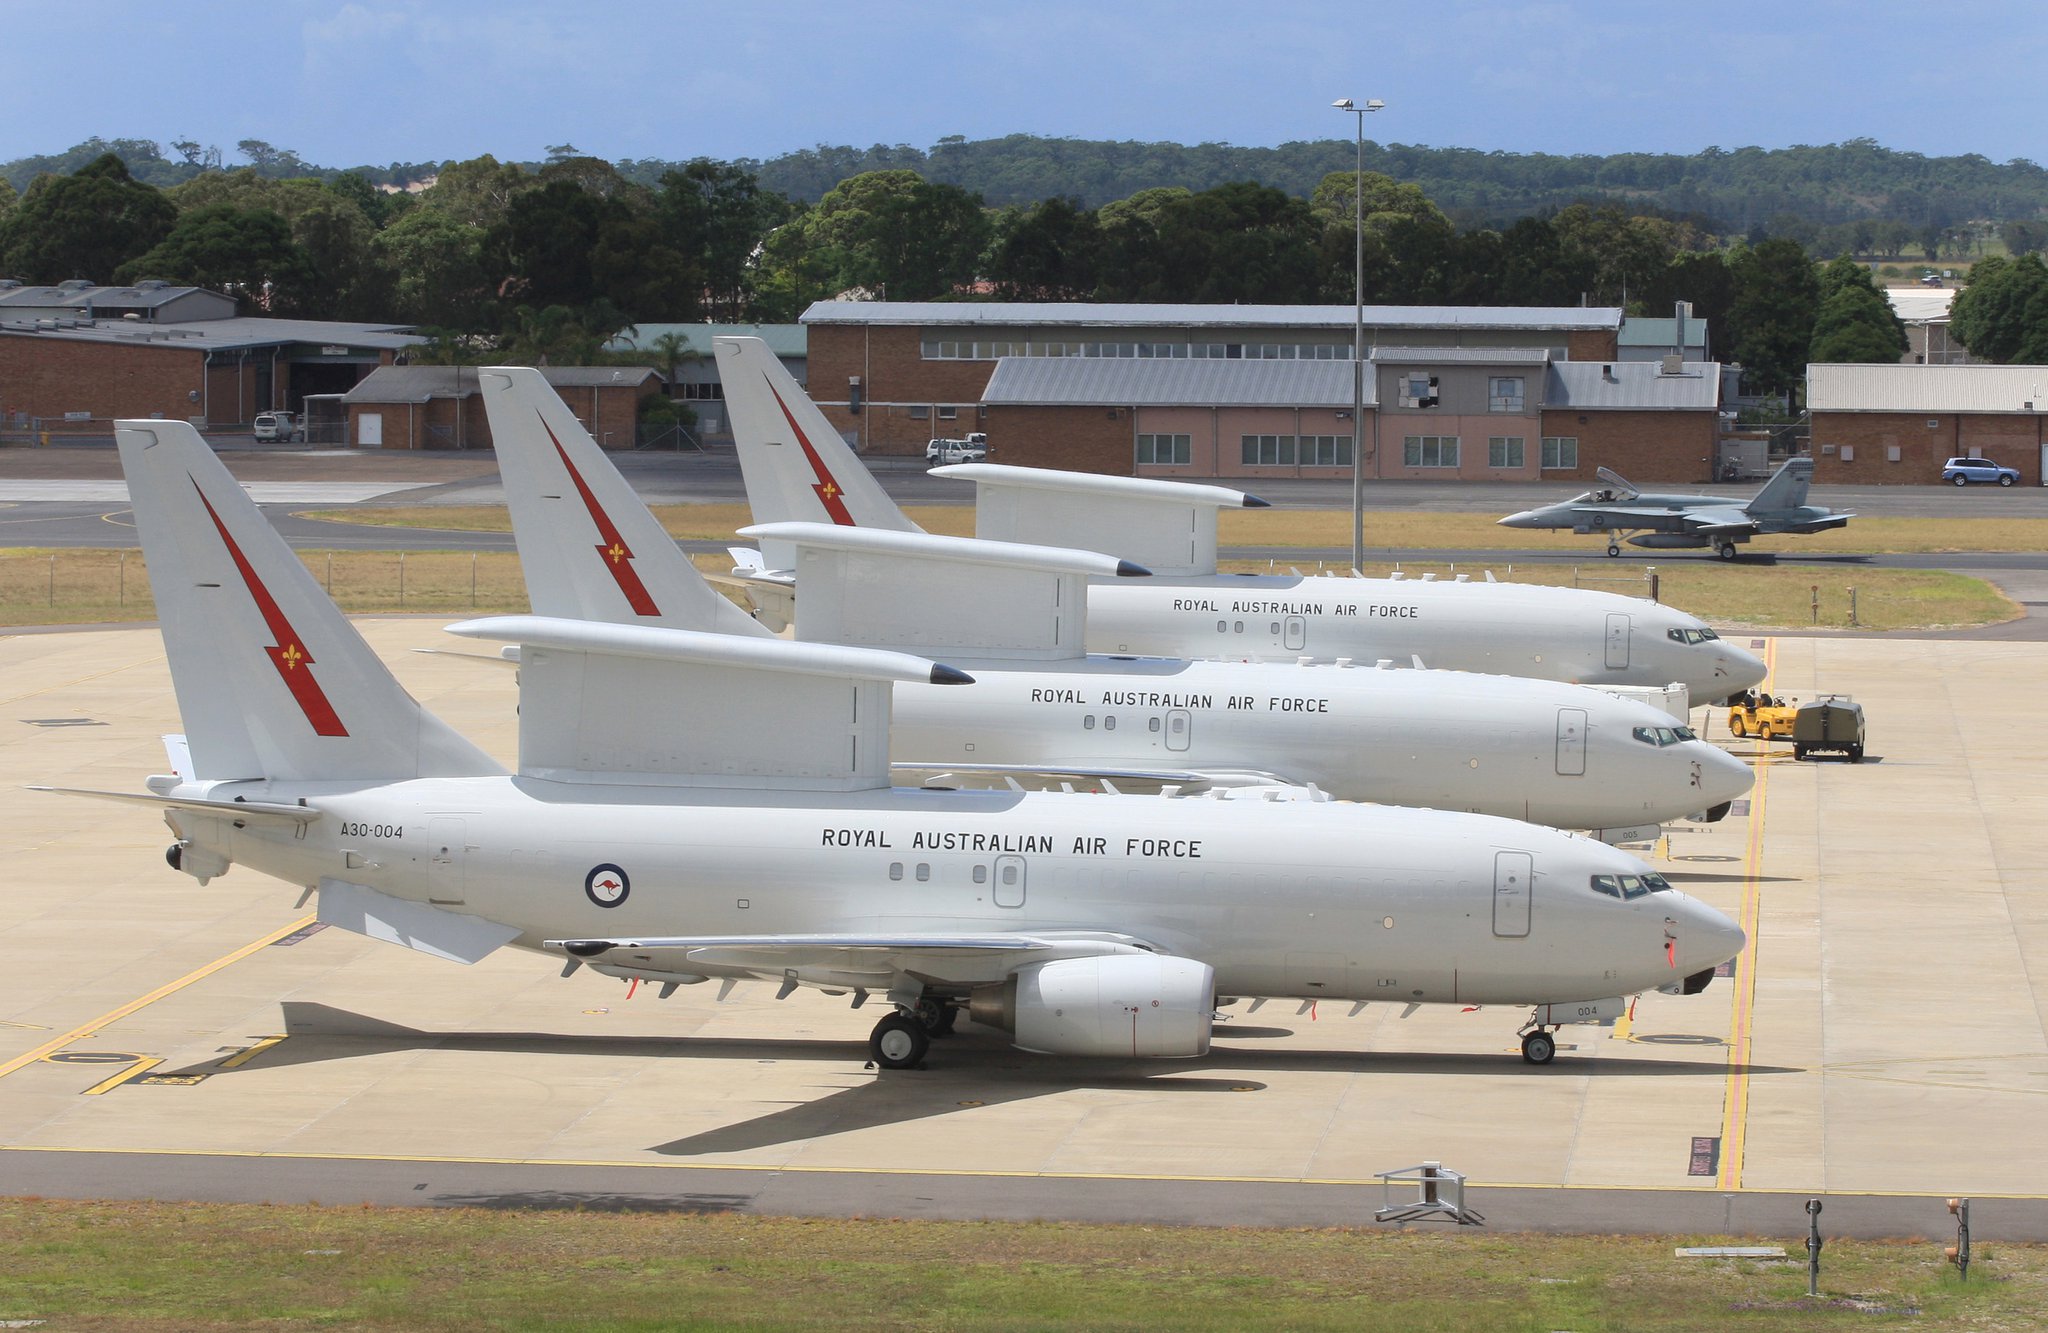 PCデスクトップにオーストラリア, 航空機, 軍隊, ボーイング E 7A ウェッジテール, オーストラリア王立空軍, ボーイング 737 Aew&c, 軍用機画像を無料でダウンロード